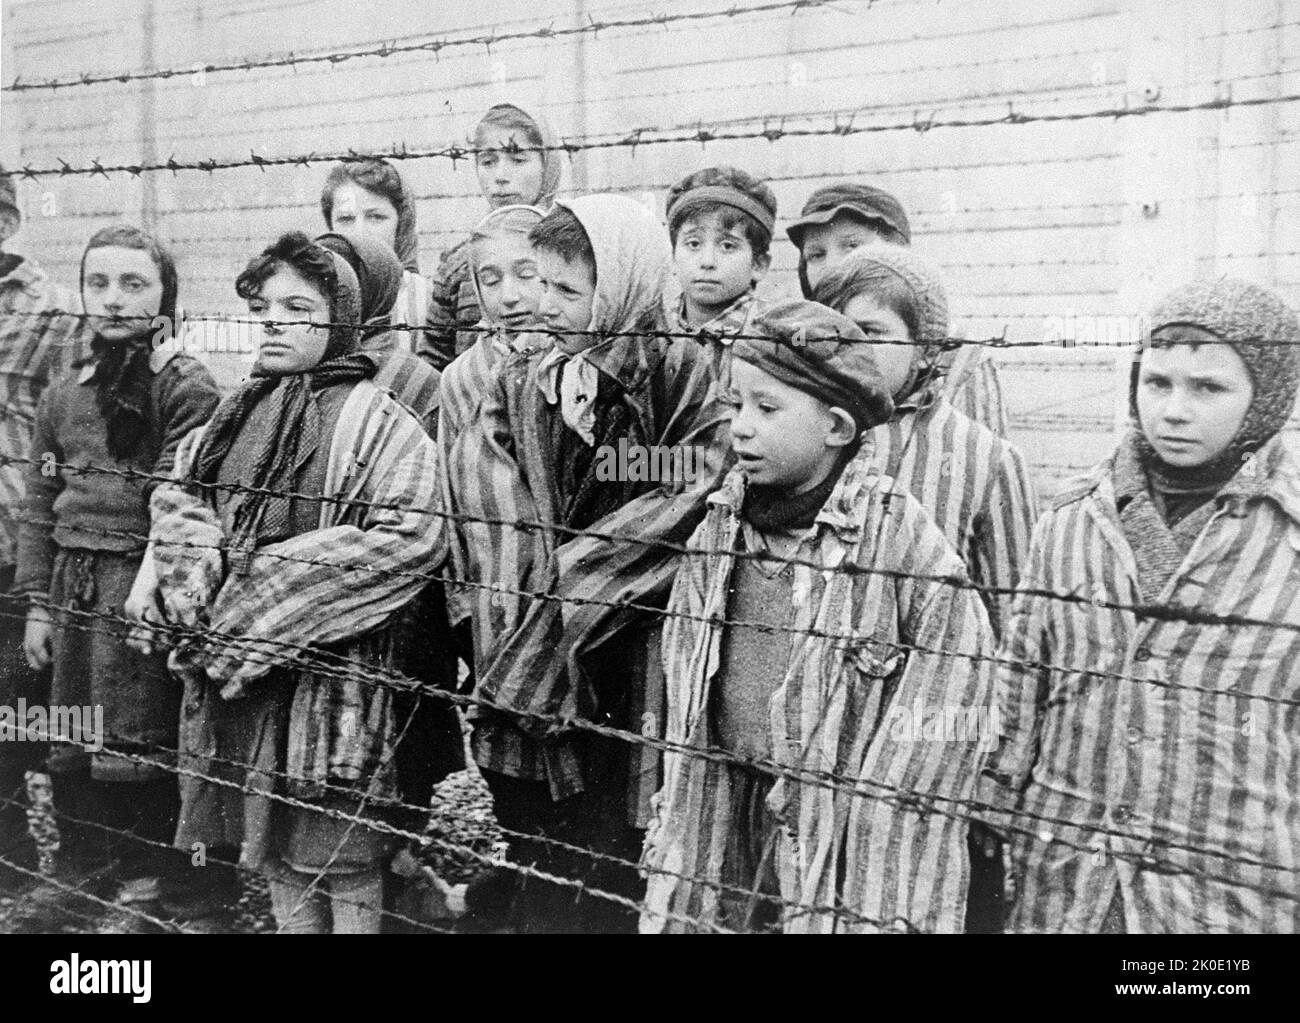 Standbild aus dem sowjetischen Film über die Befreiung von Auschwitz, aufgenommen von der Filmeinheit der Ersten Ukrainischen Front, aufgenommen 1945 von Alexander Voronzow und anderen aus seiner Gruppe. Überlebende von Auschwitz, die in Häftlingsjacken in Erwachsenengröße leben, stehen hinter einem Stacheldrahtzaun. Stockfoto